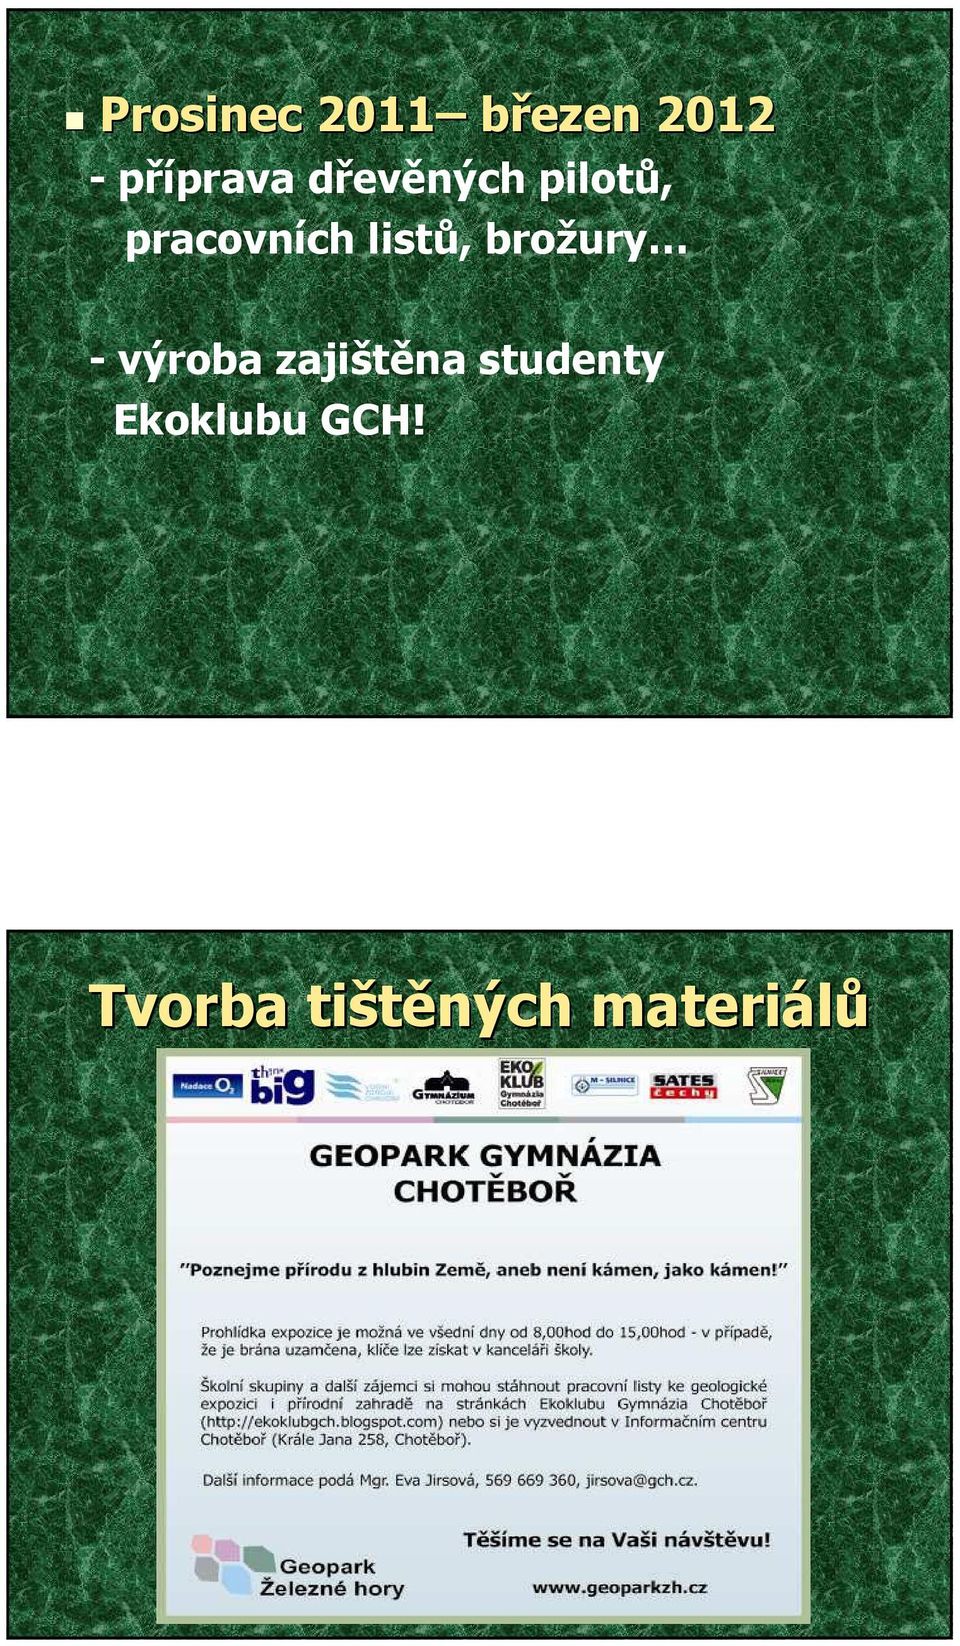 brožury - výroba zajištěna studenty